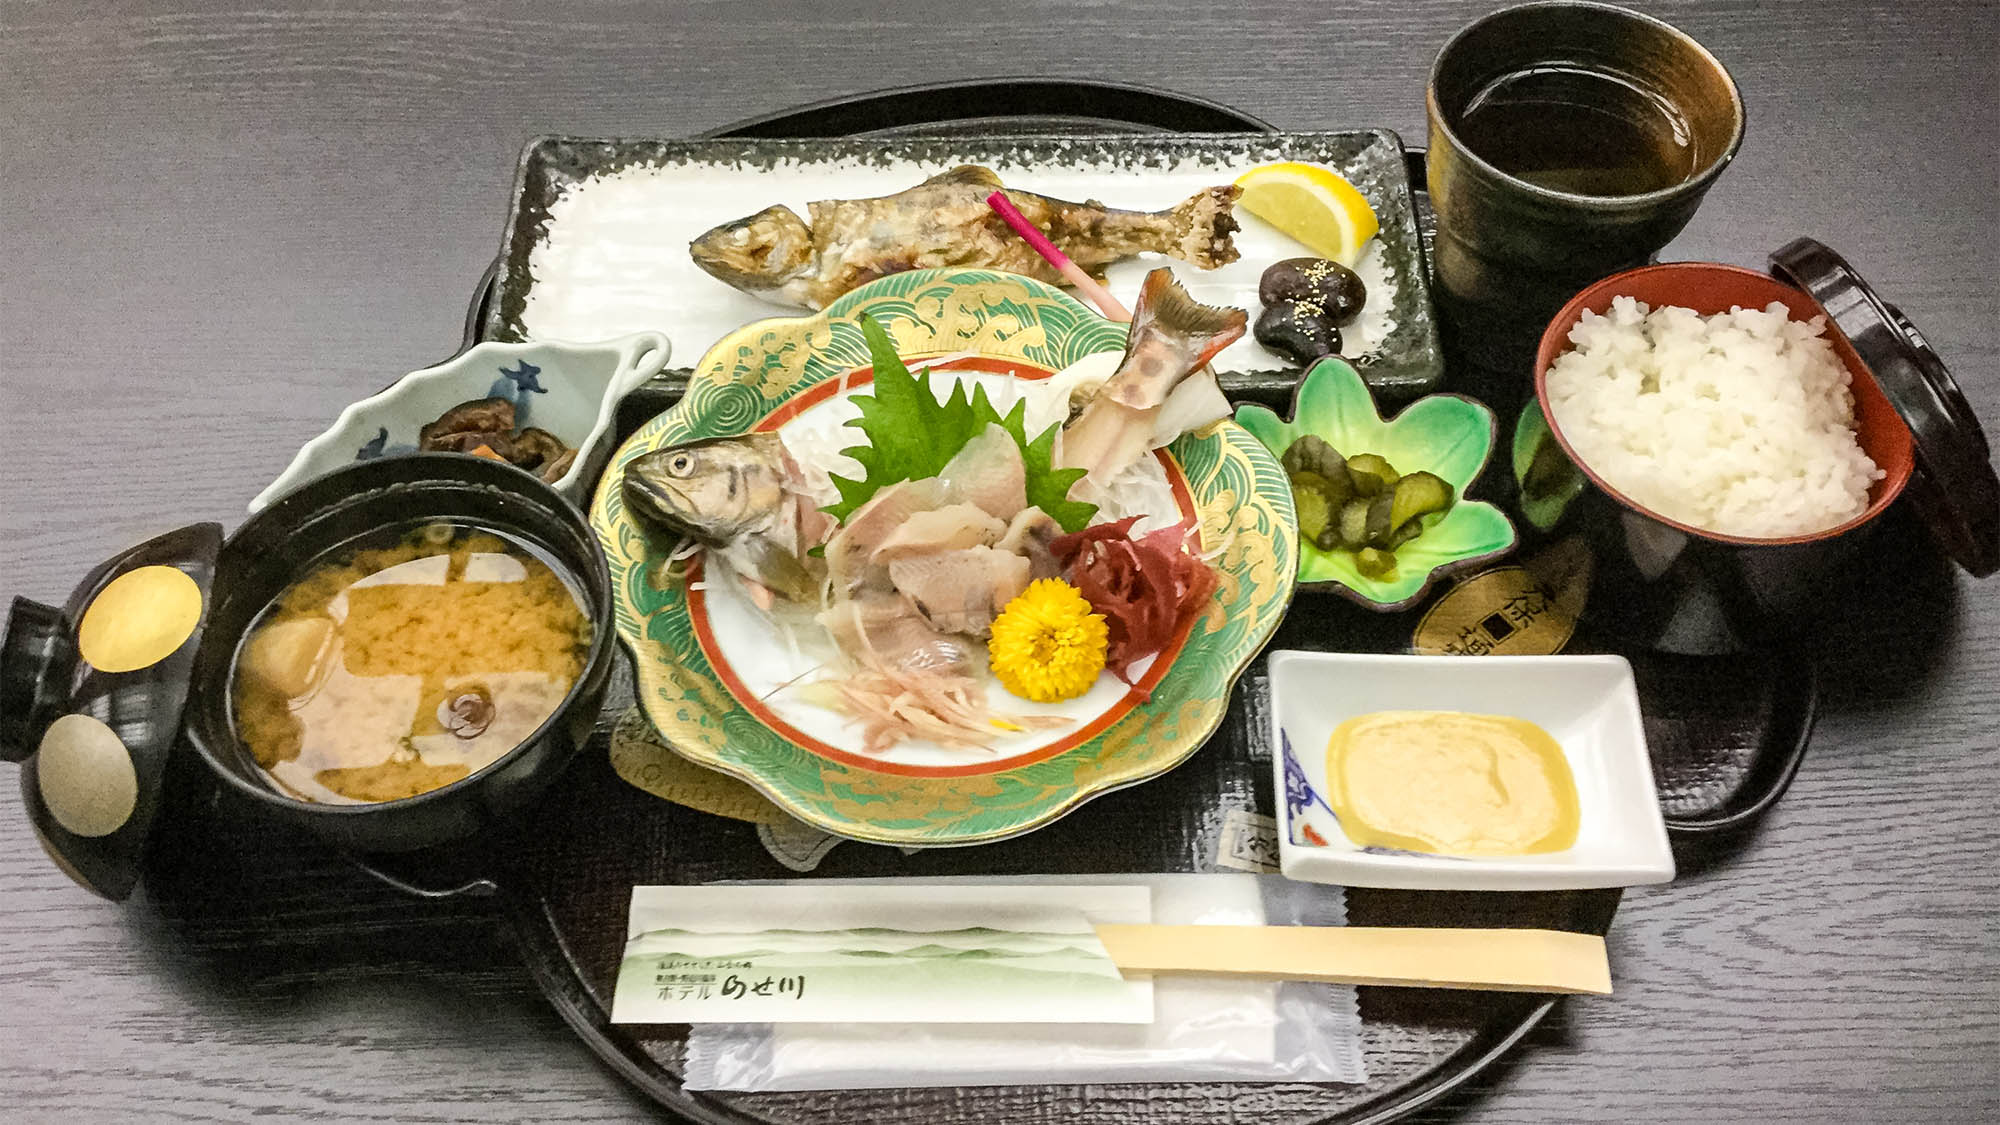 ・【料理】野迫川村名物のアマゴをふんだんに使ったアマゴ定食です